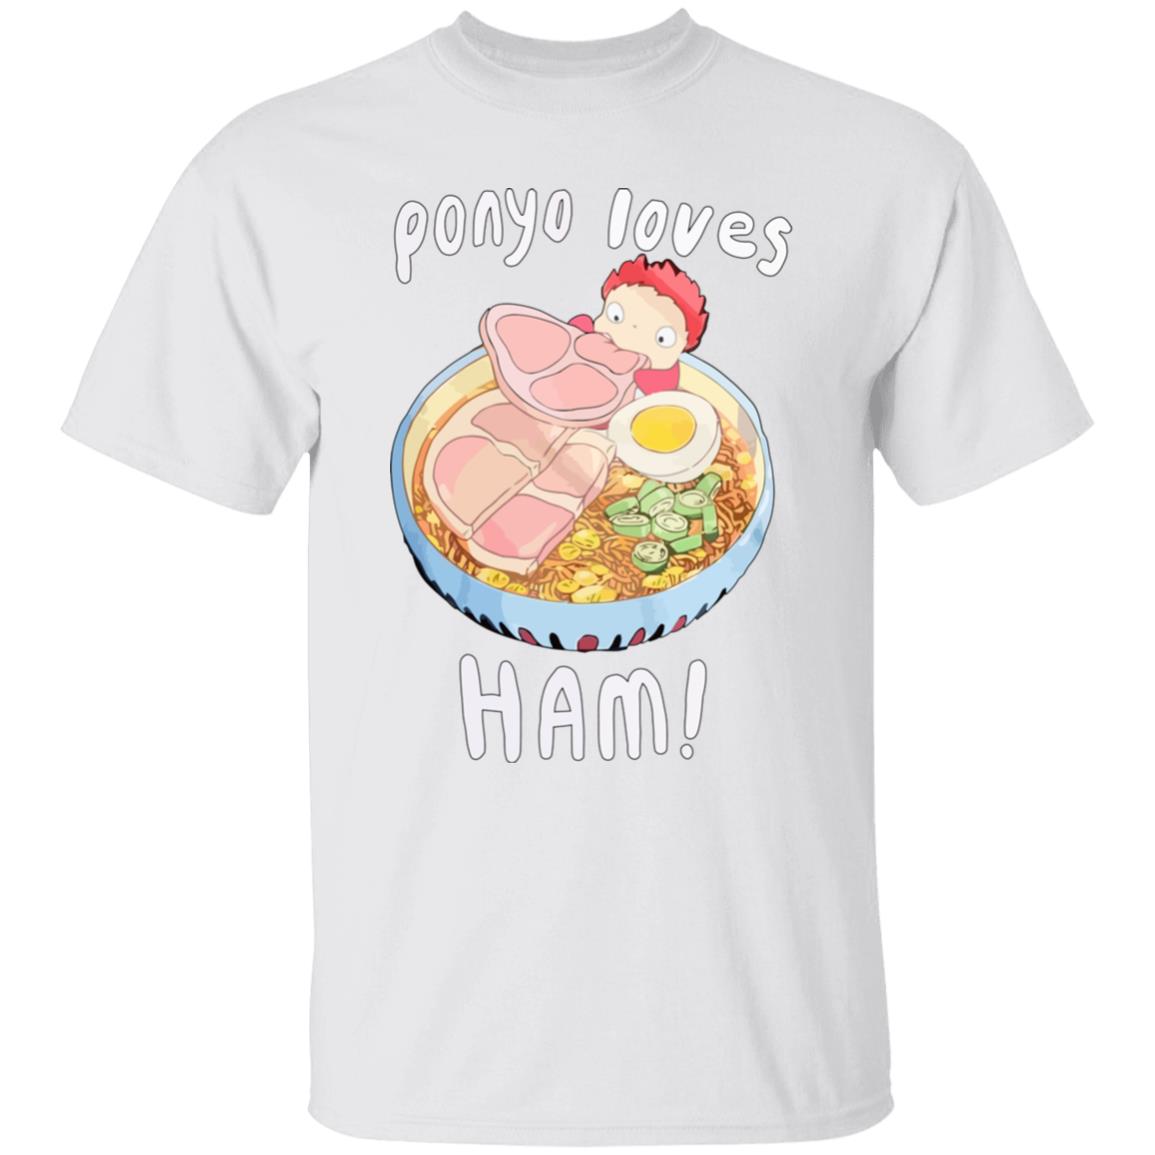 Ponyo Loves Ham T Shirt